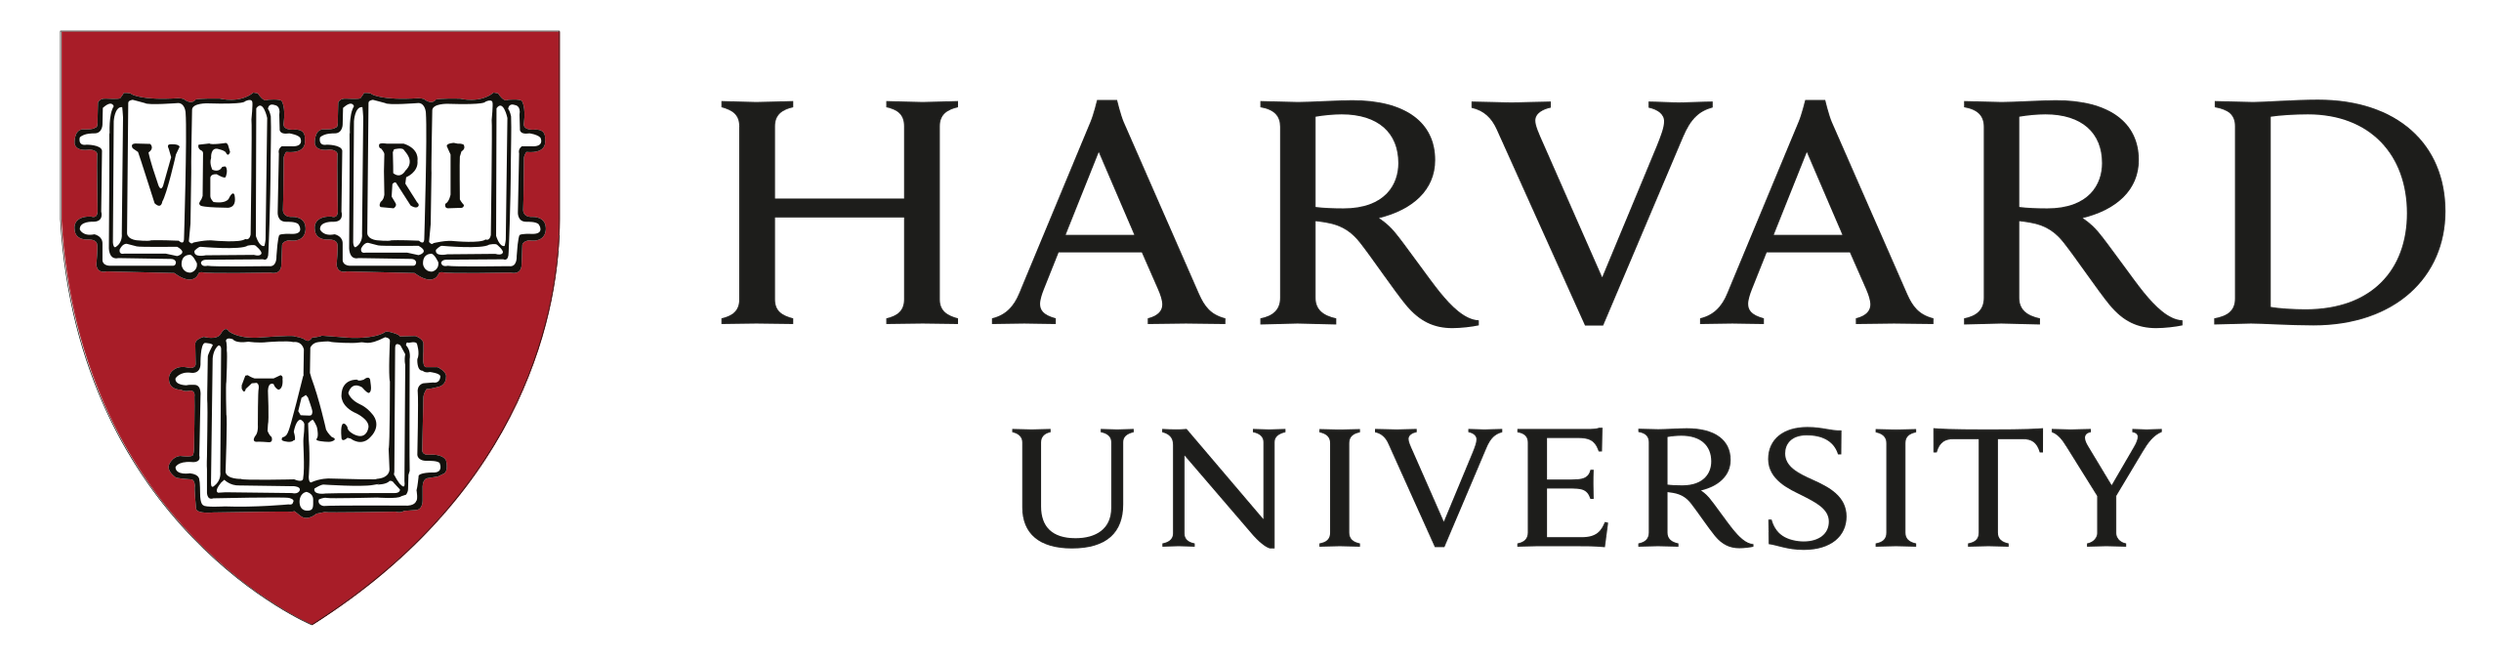 harvard logo.png